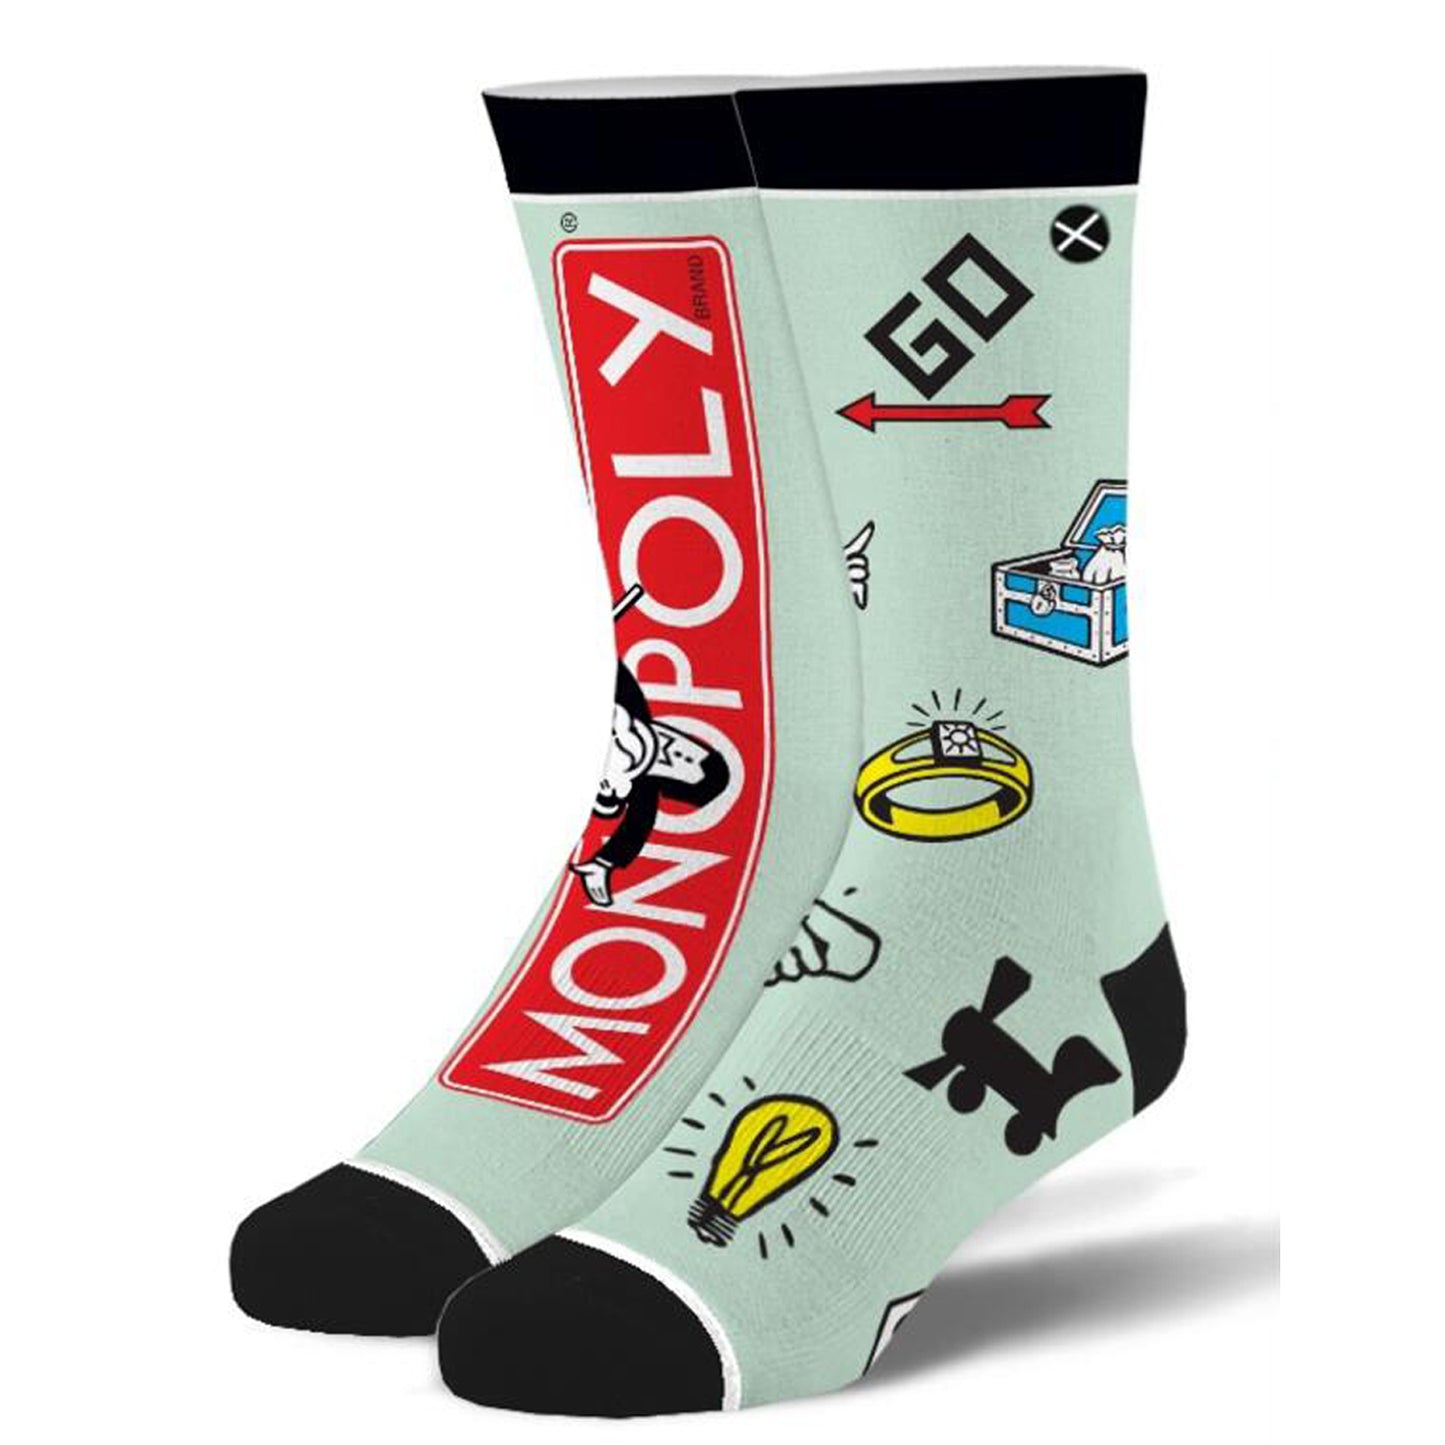 Odd Sox Men's Crew Socks - Monopoly